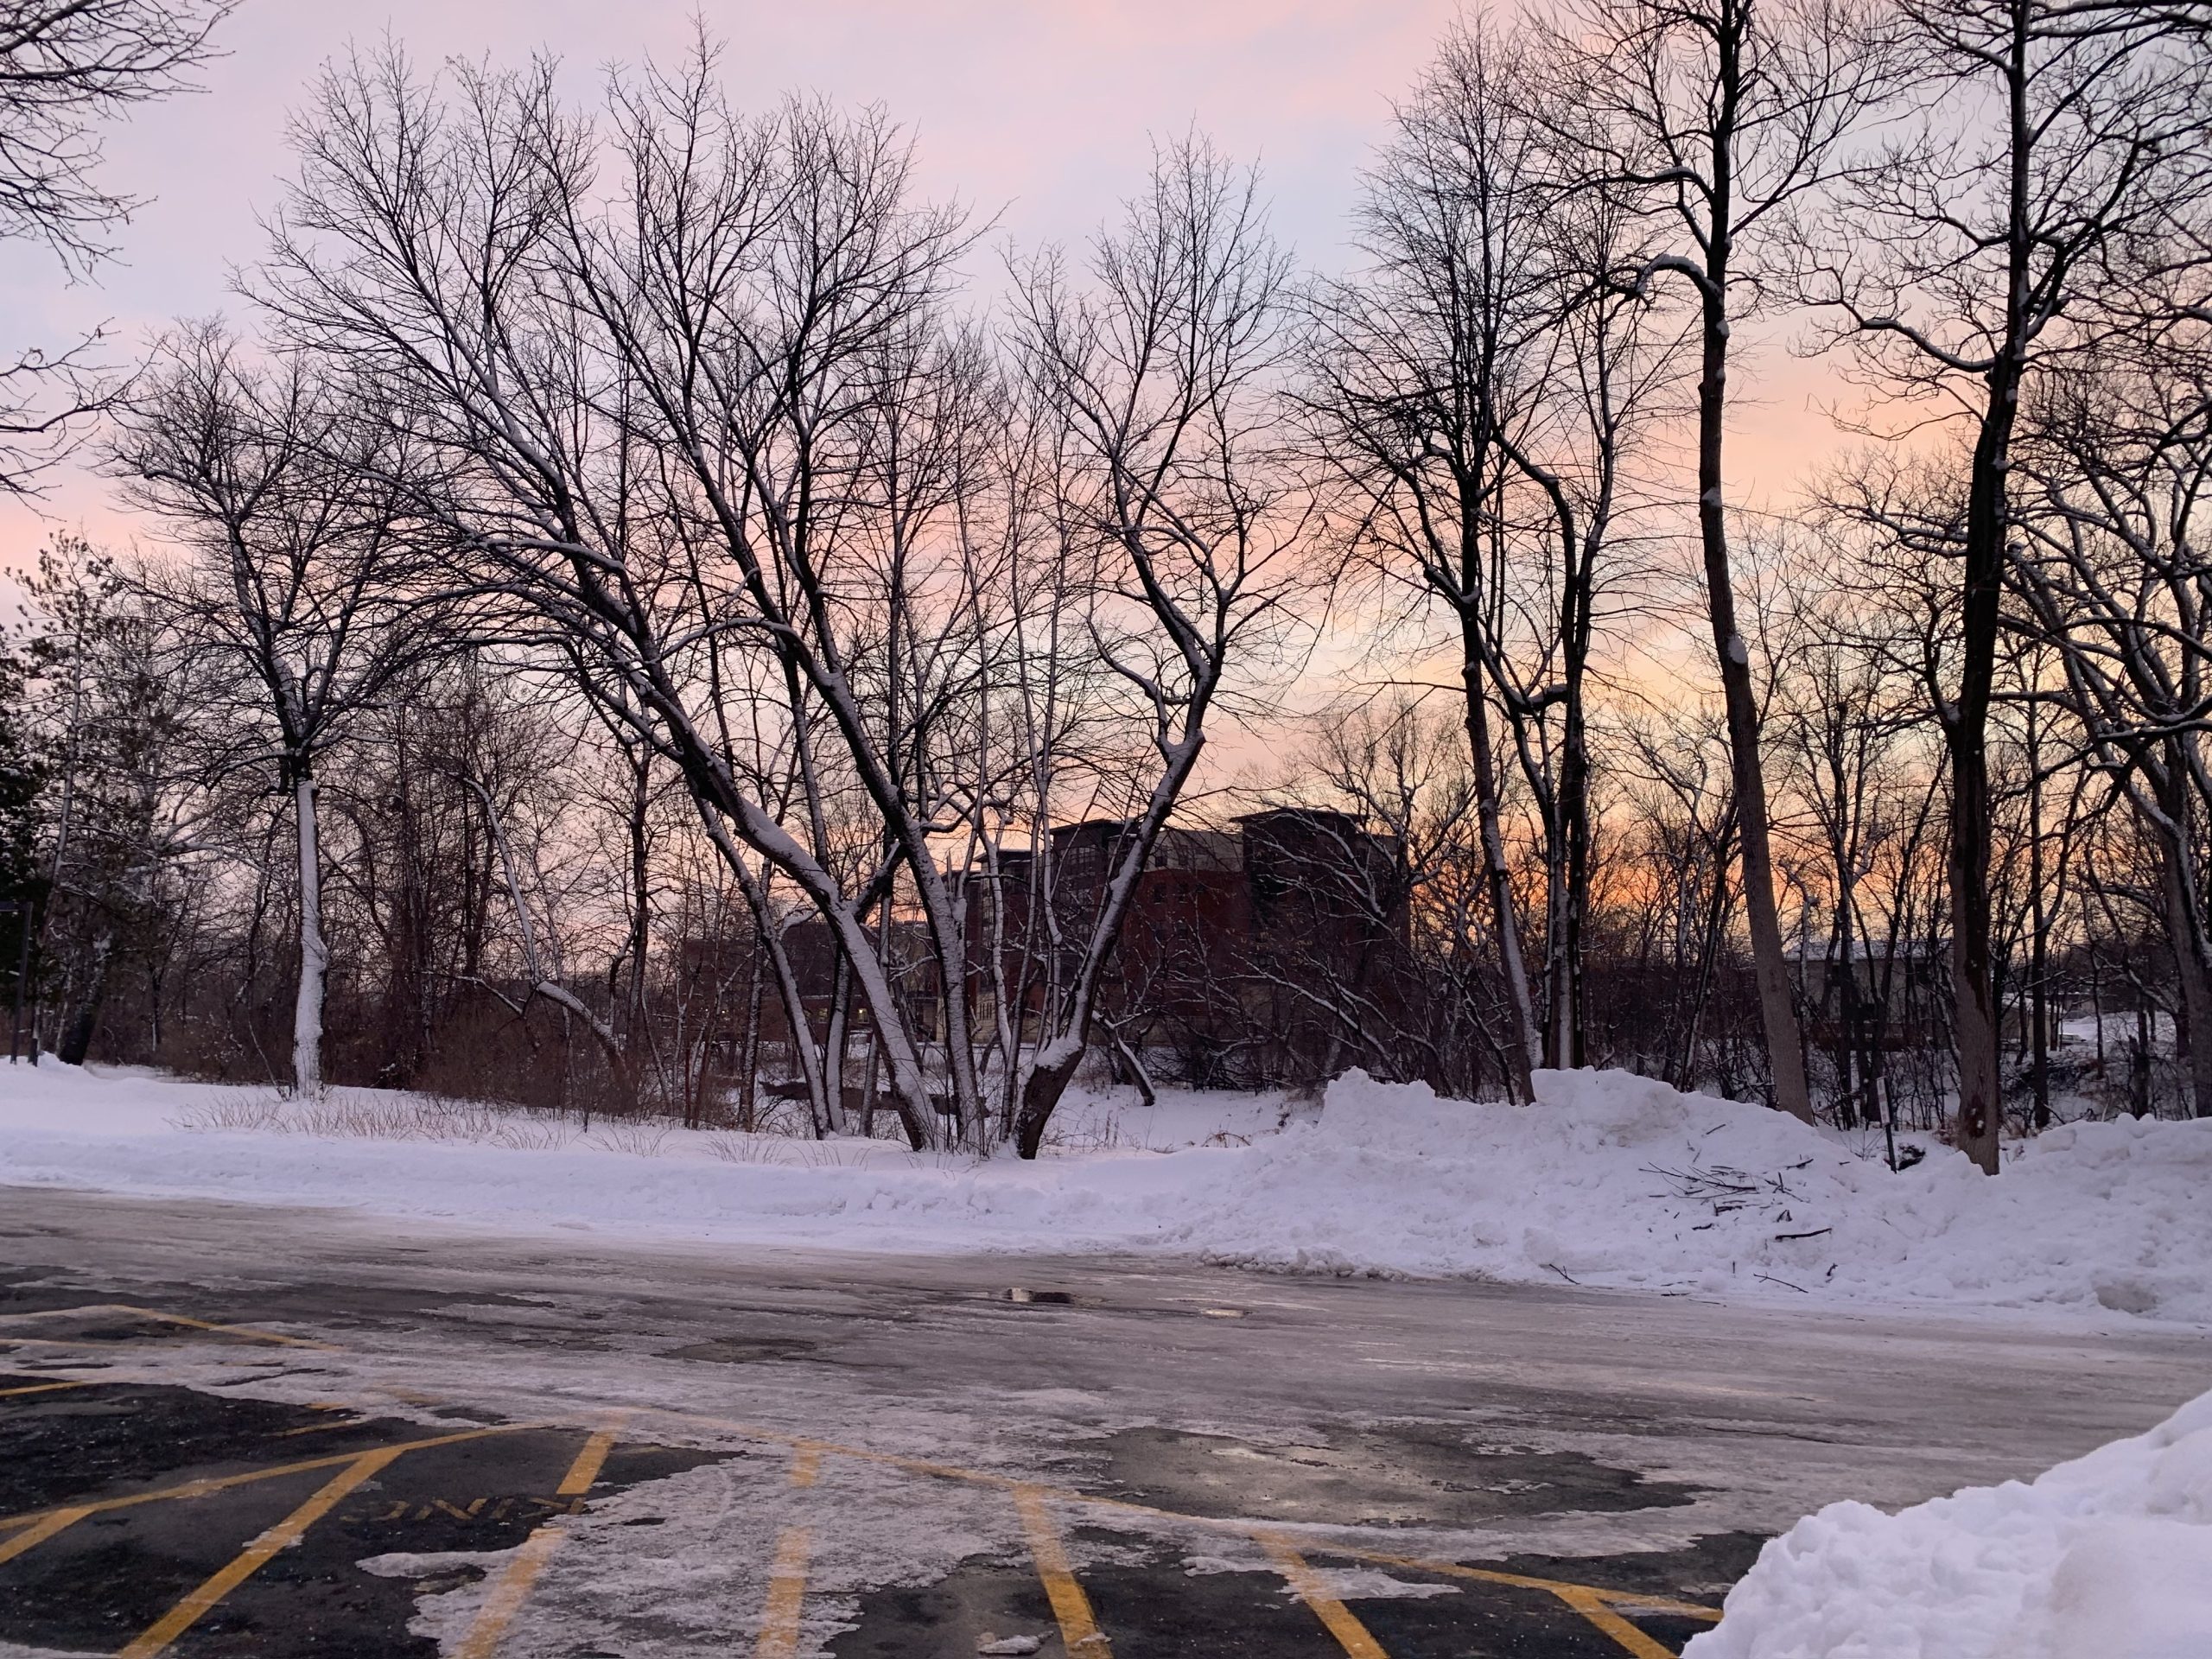 campus sunset